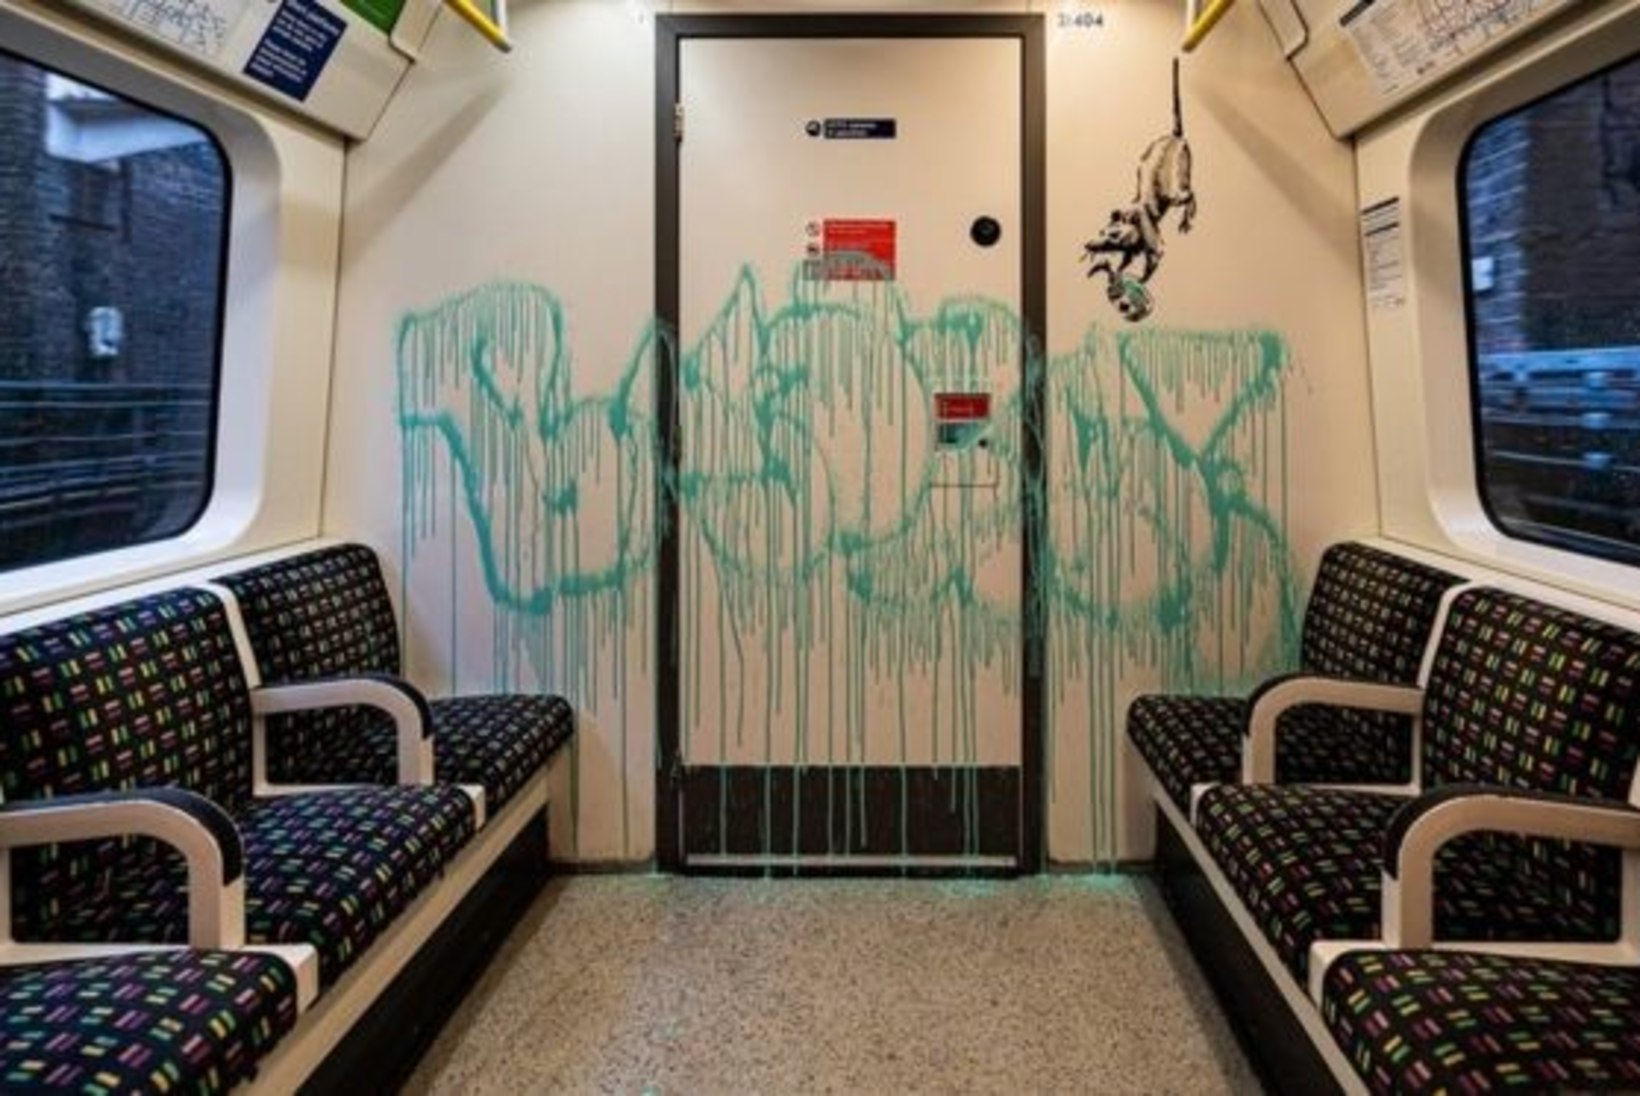 JÄIGAD EESKIRJAD: Londoni metrootöötajad hävitasid kuulsa grafitikunstniku uusima teose